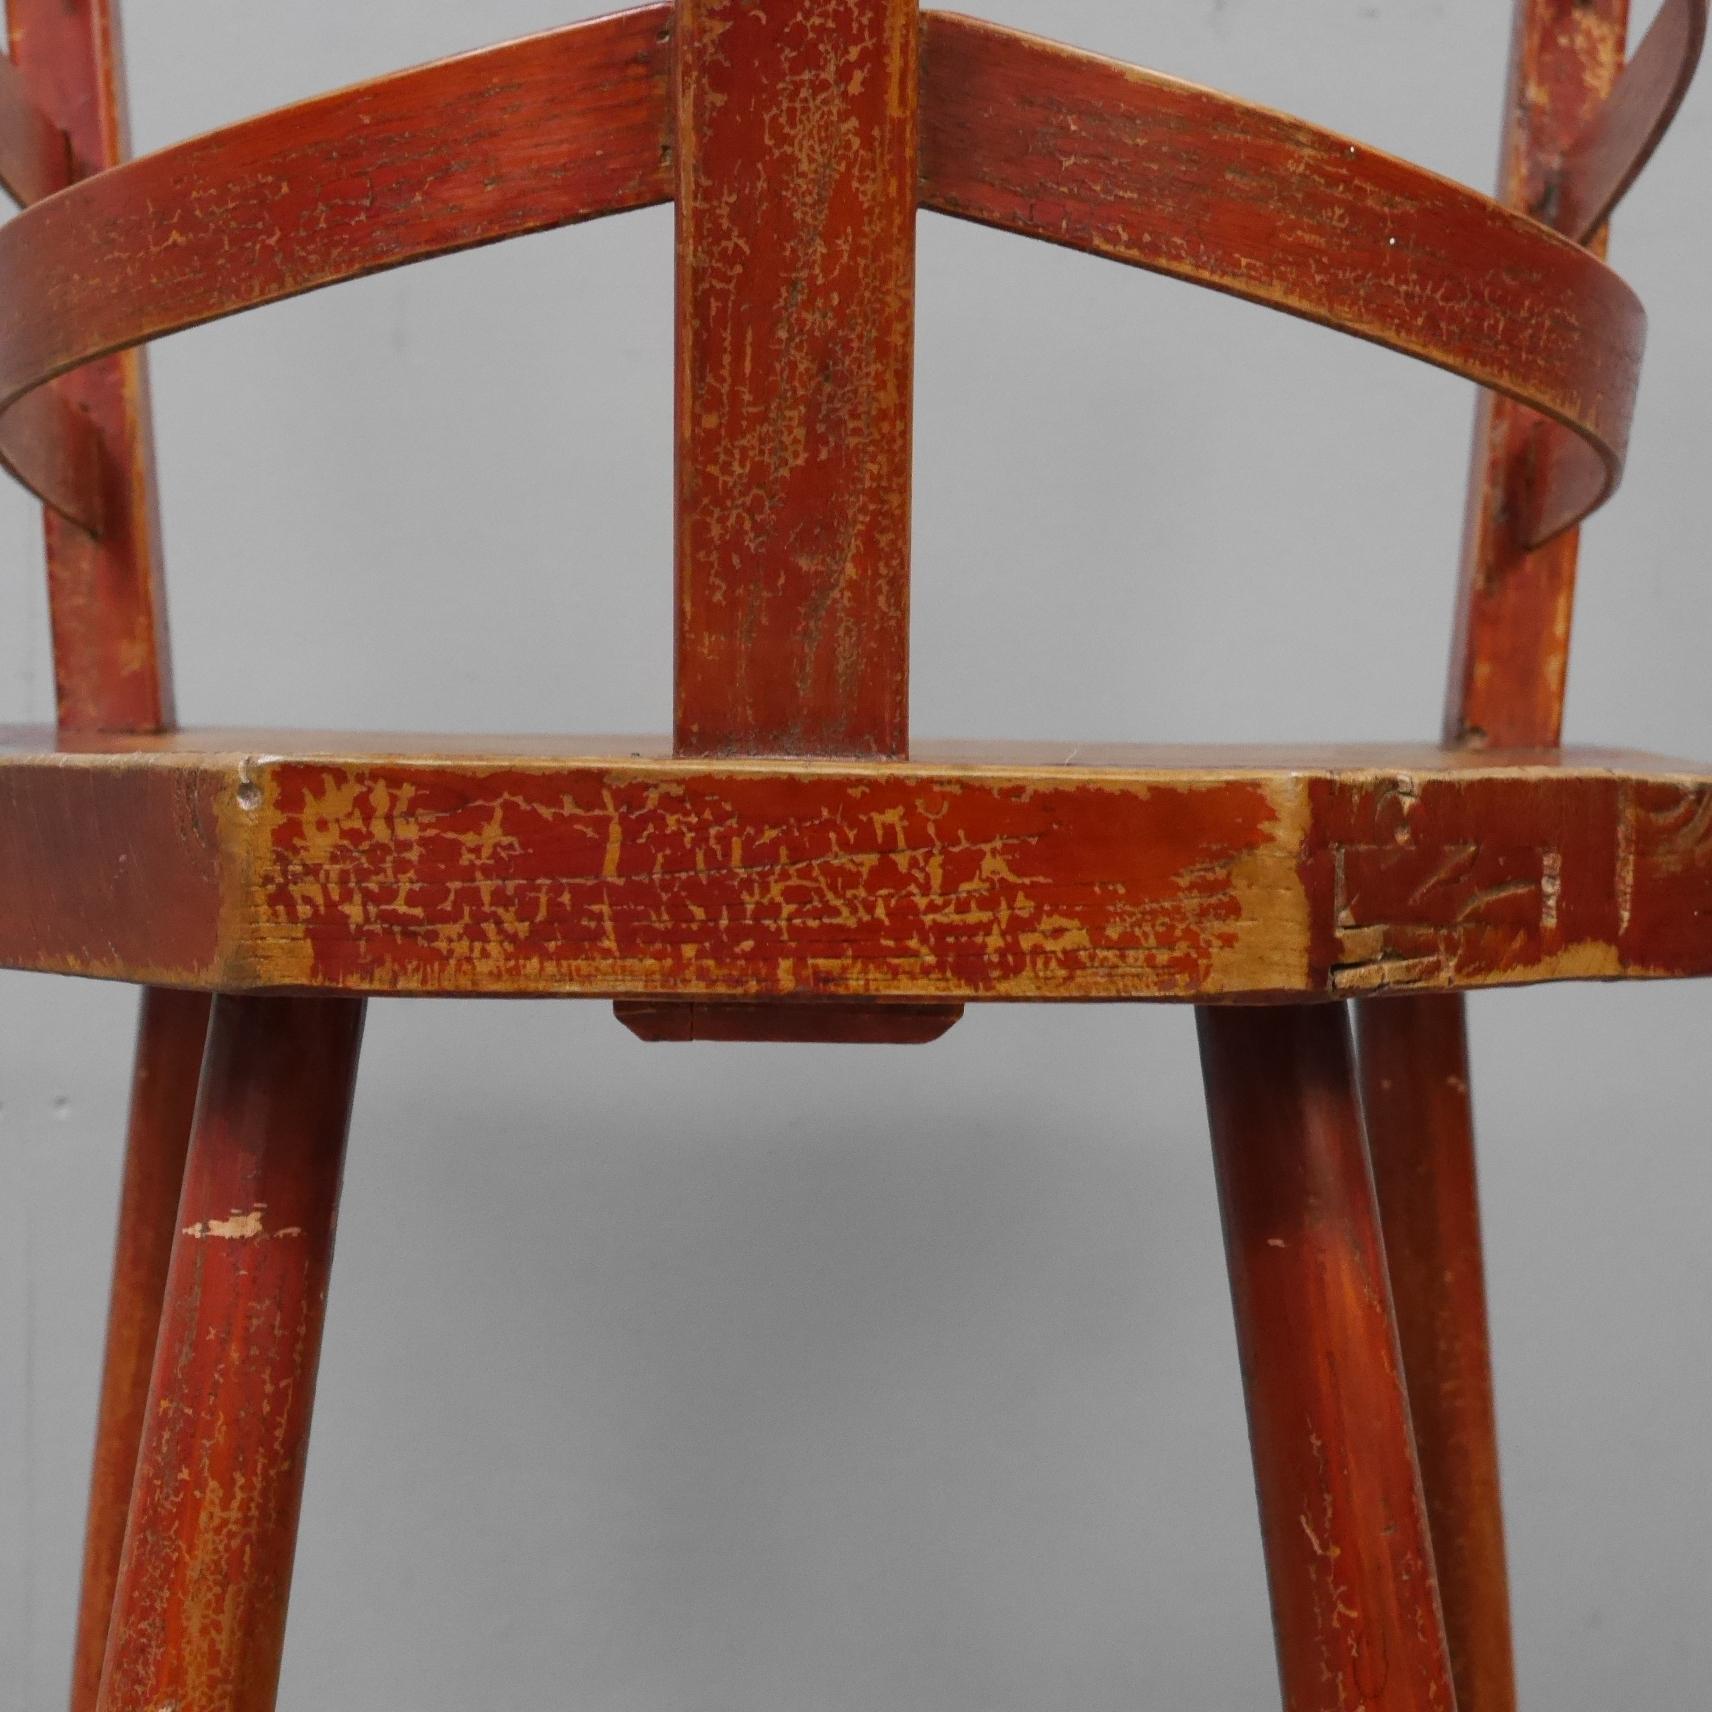 Ein irischer volkstümlicher Boat Builders Stuhl.
Ein wunderschön gefertigter Stuhl von hervorragender Form und Farbe. Der dicke Plattensitz steht auf vier gedrechselten Beinen und stützt die einzigartige Rückenlehne mit dampfgebogenen 